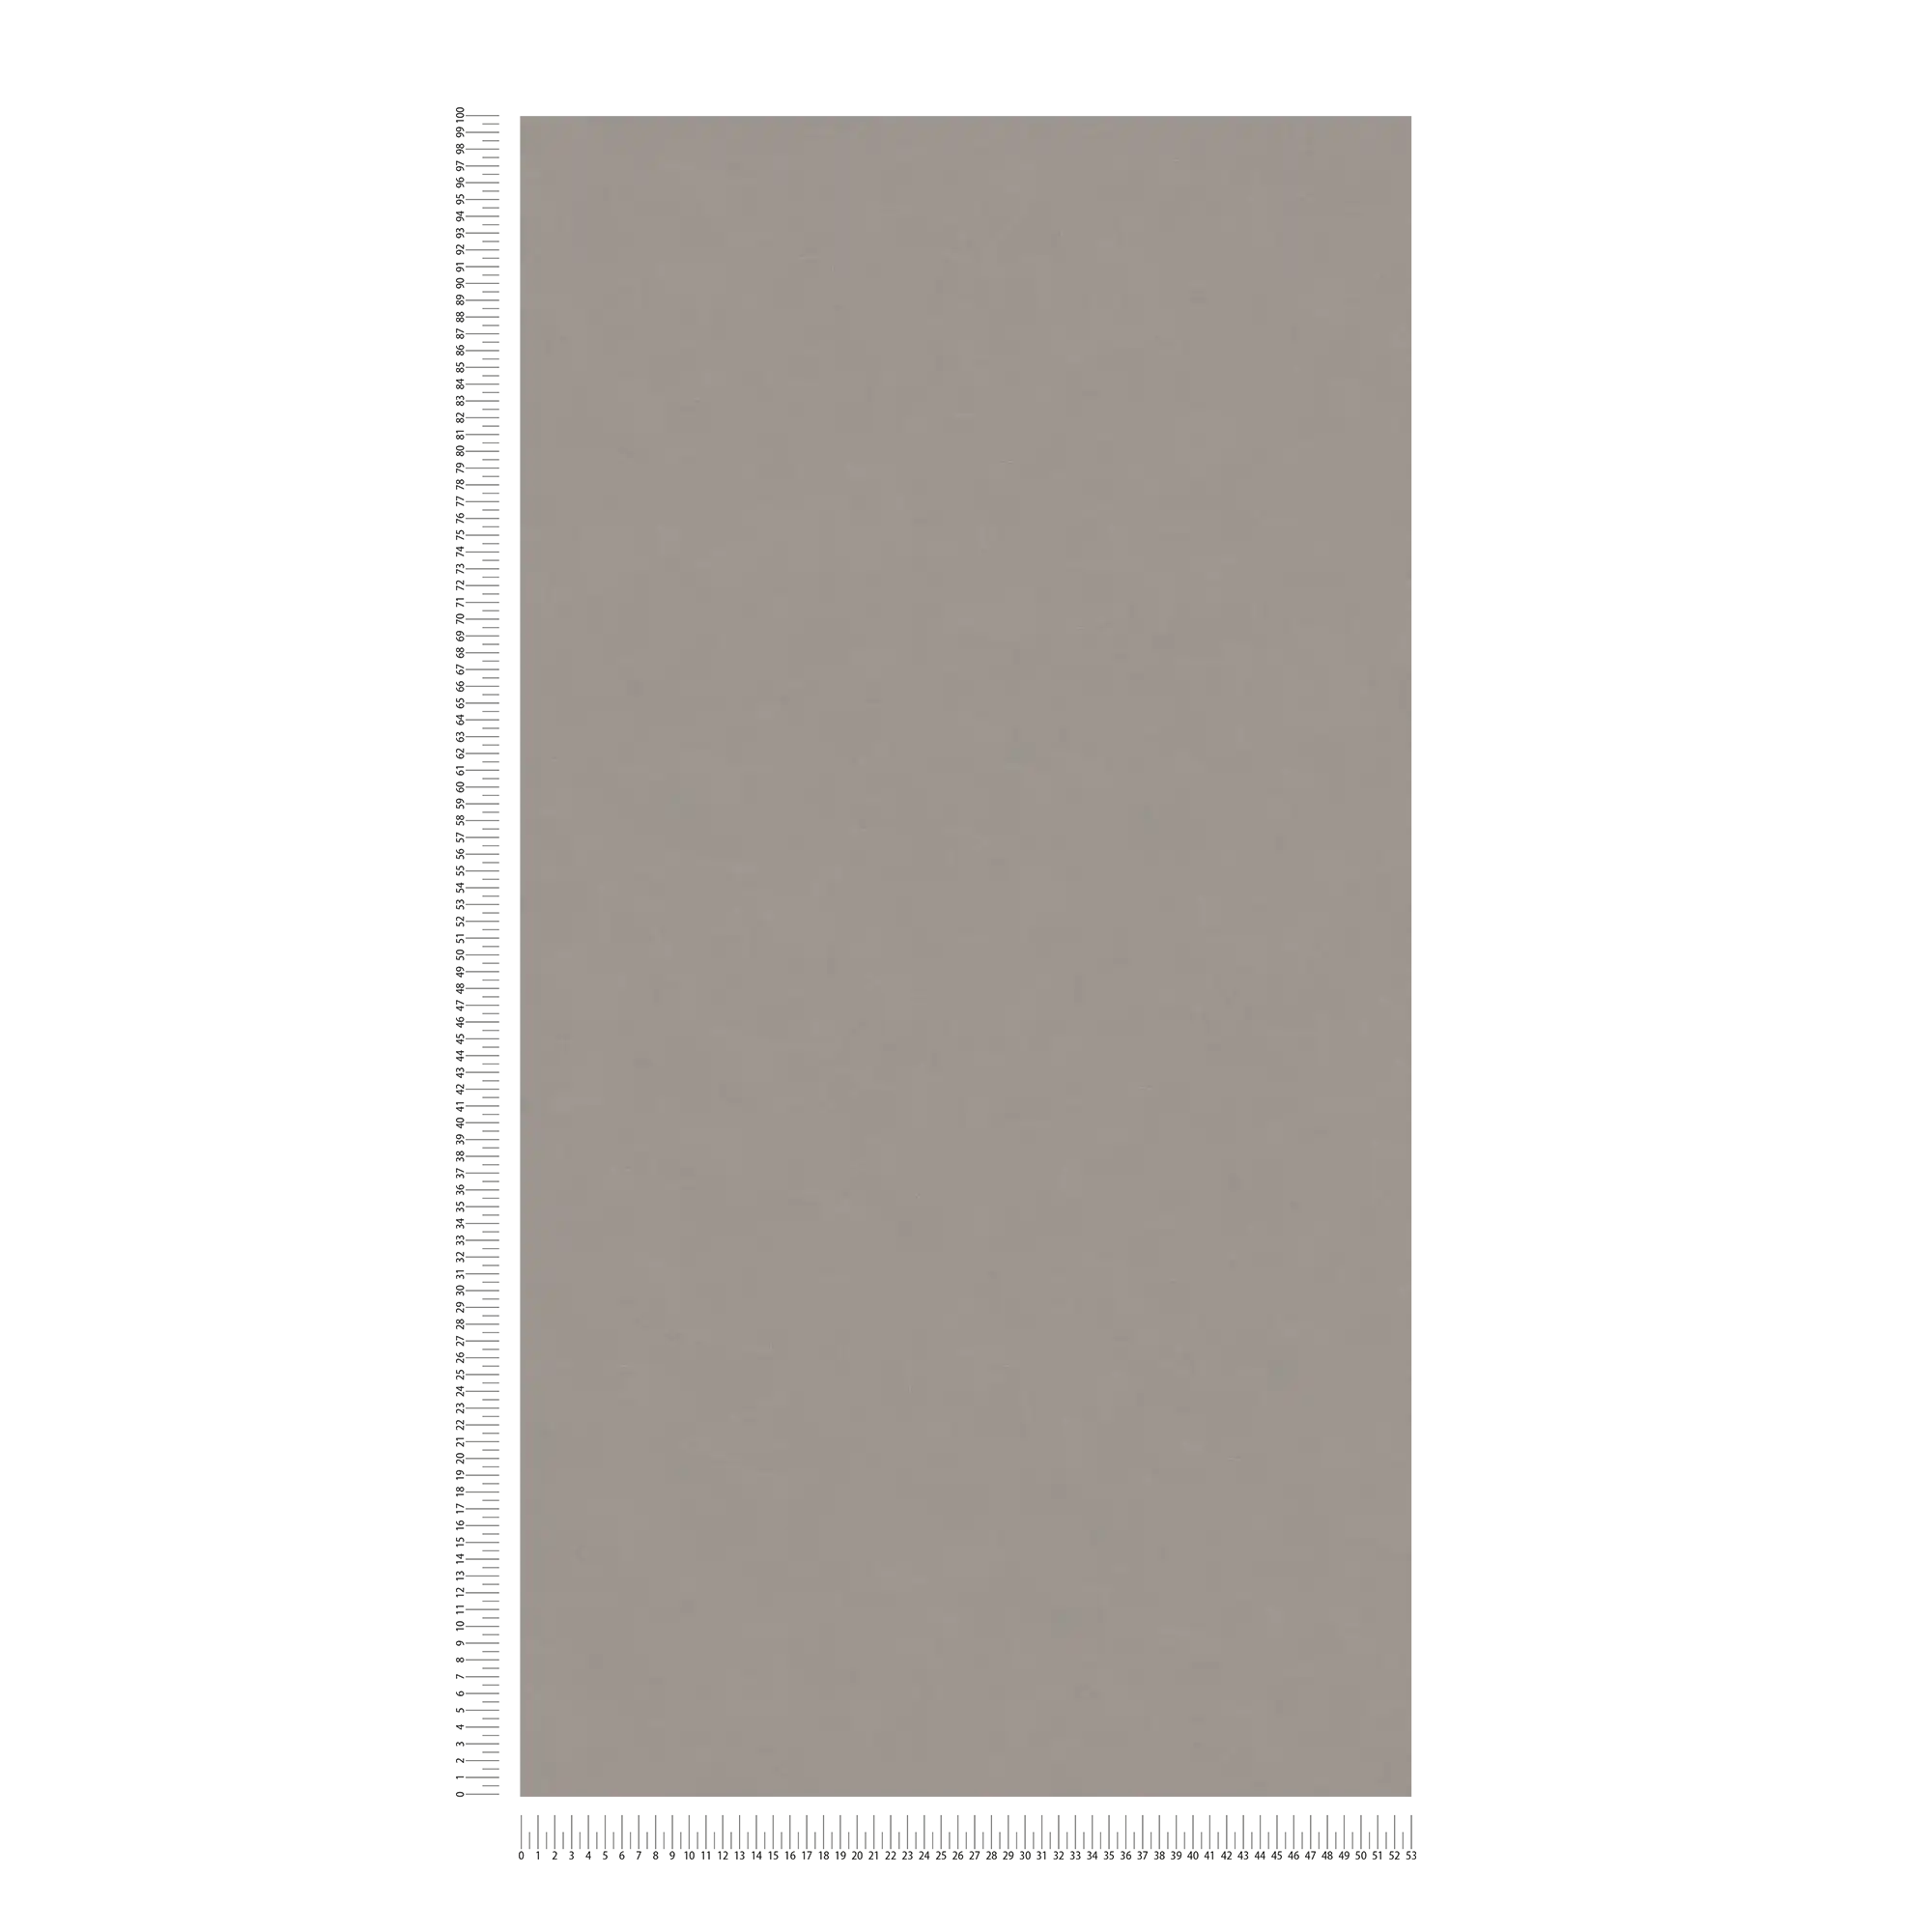             Gipsvezelbehang effen met structuurpatroon - grijs, taupe
        